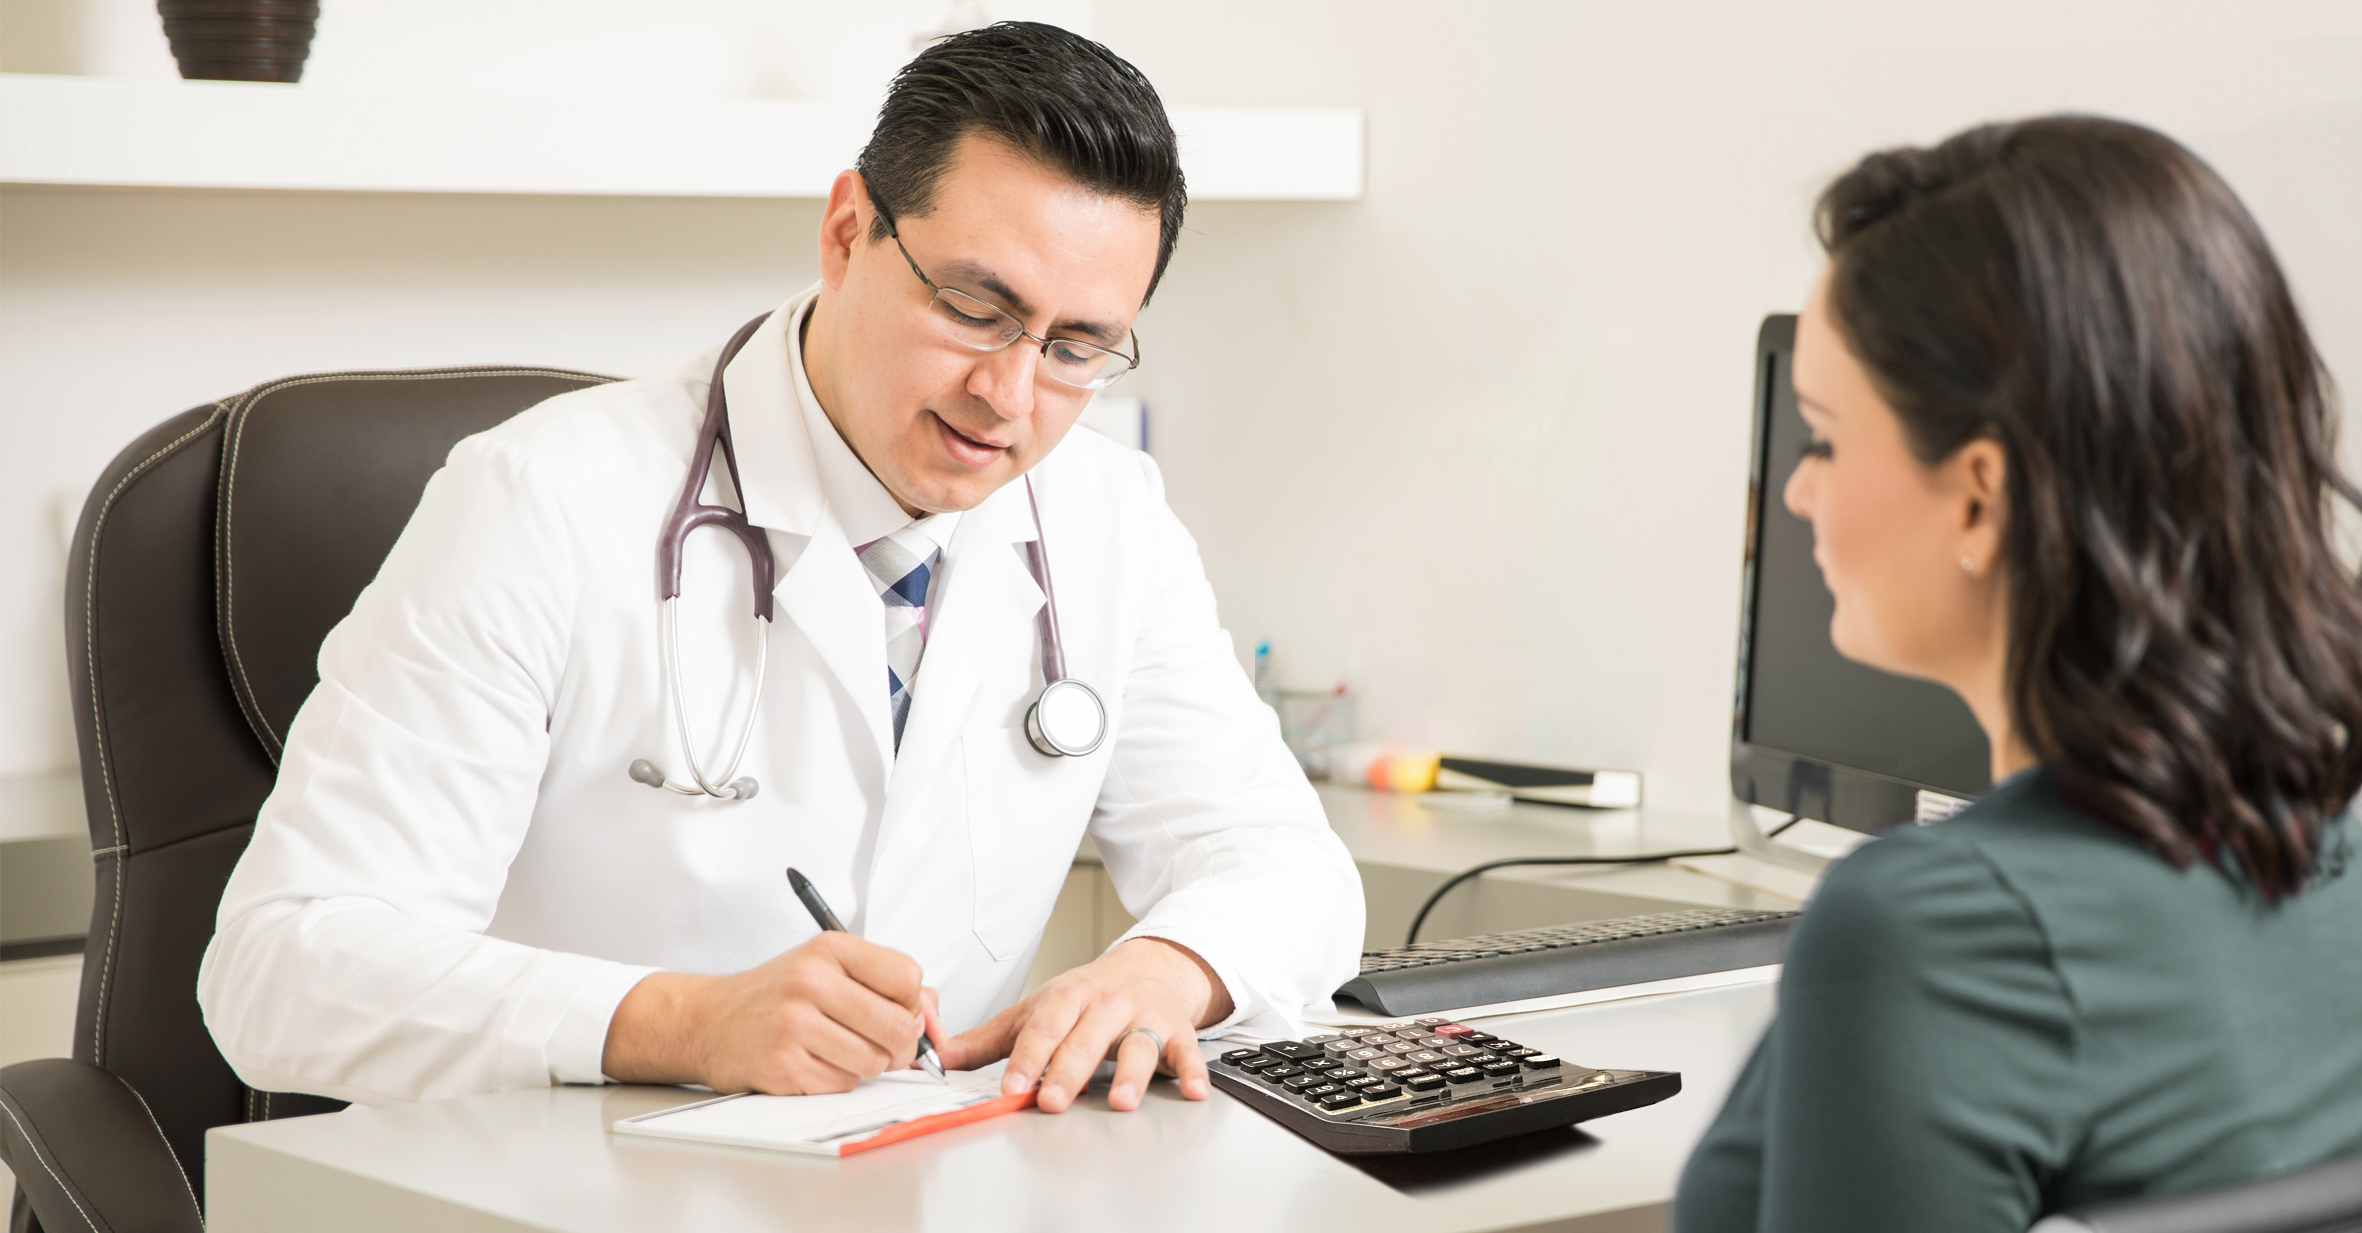 صورة طبيب يصف للمرضى دواءً مفيداً جداً لحسابه البنكي عندما تحوِّل له شركة الدواء نسبته من المبيعات